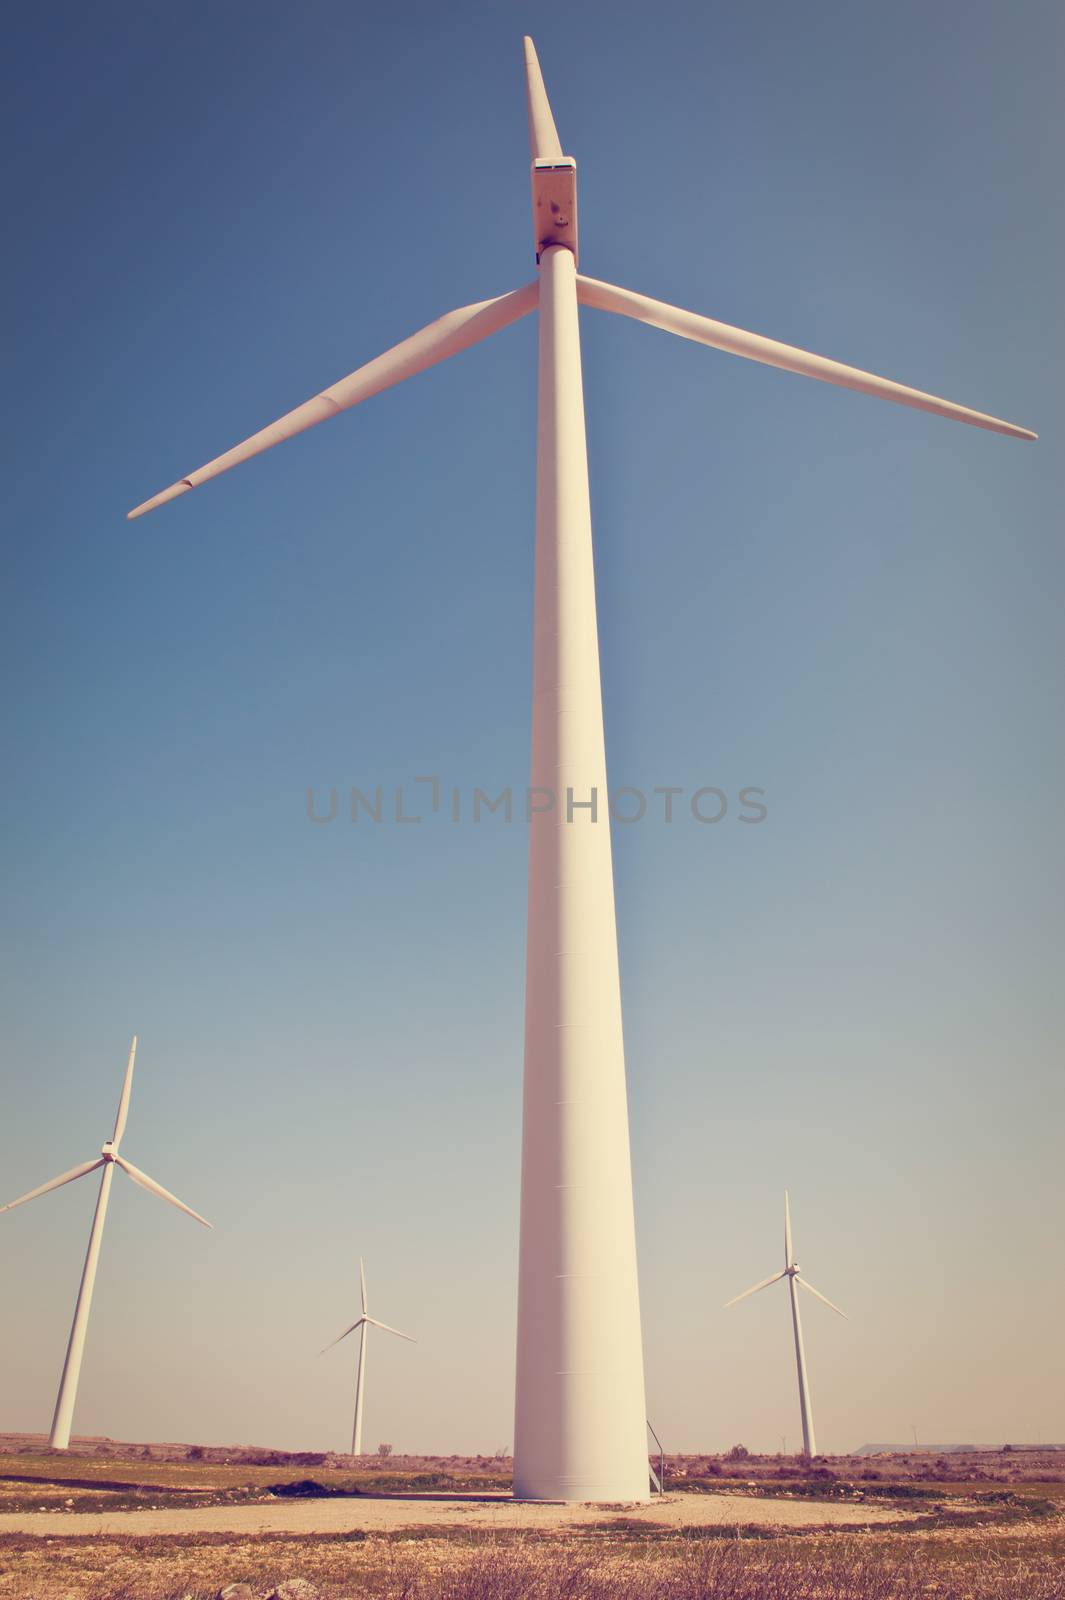 Modern Wind Turbines in Spain, Instagram Effect